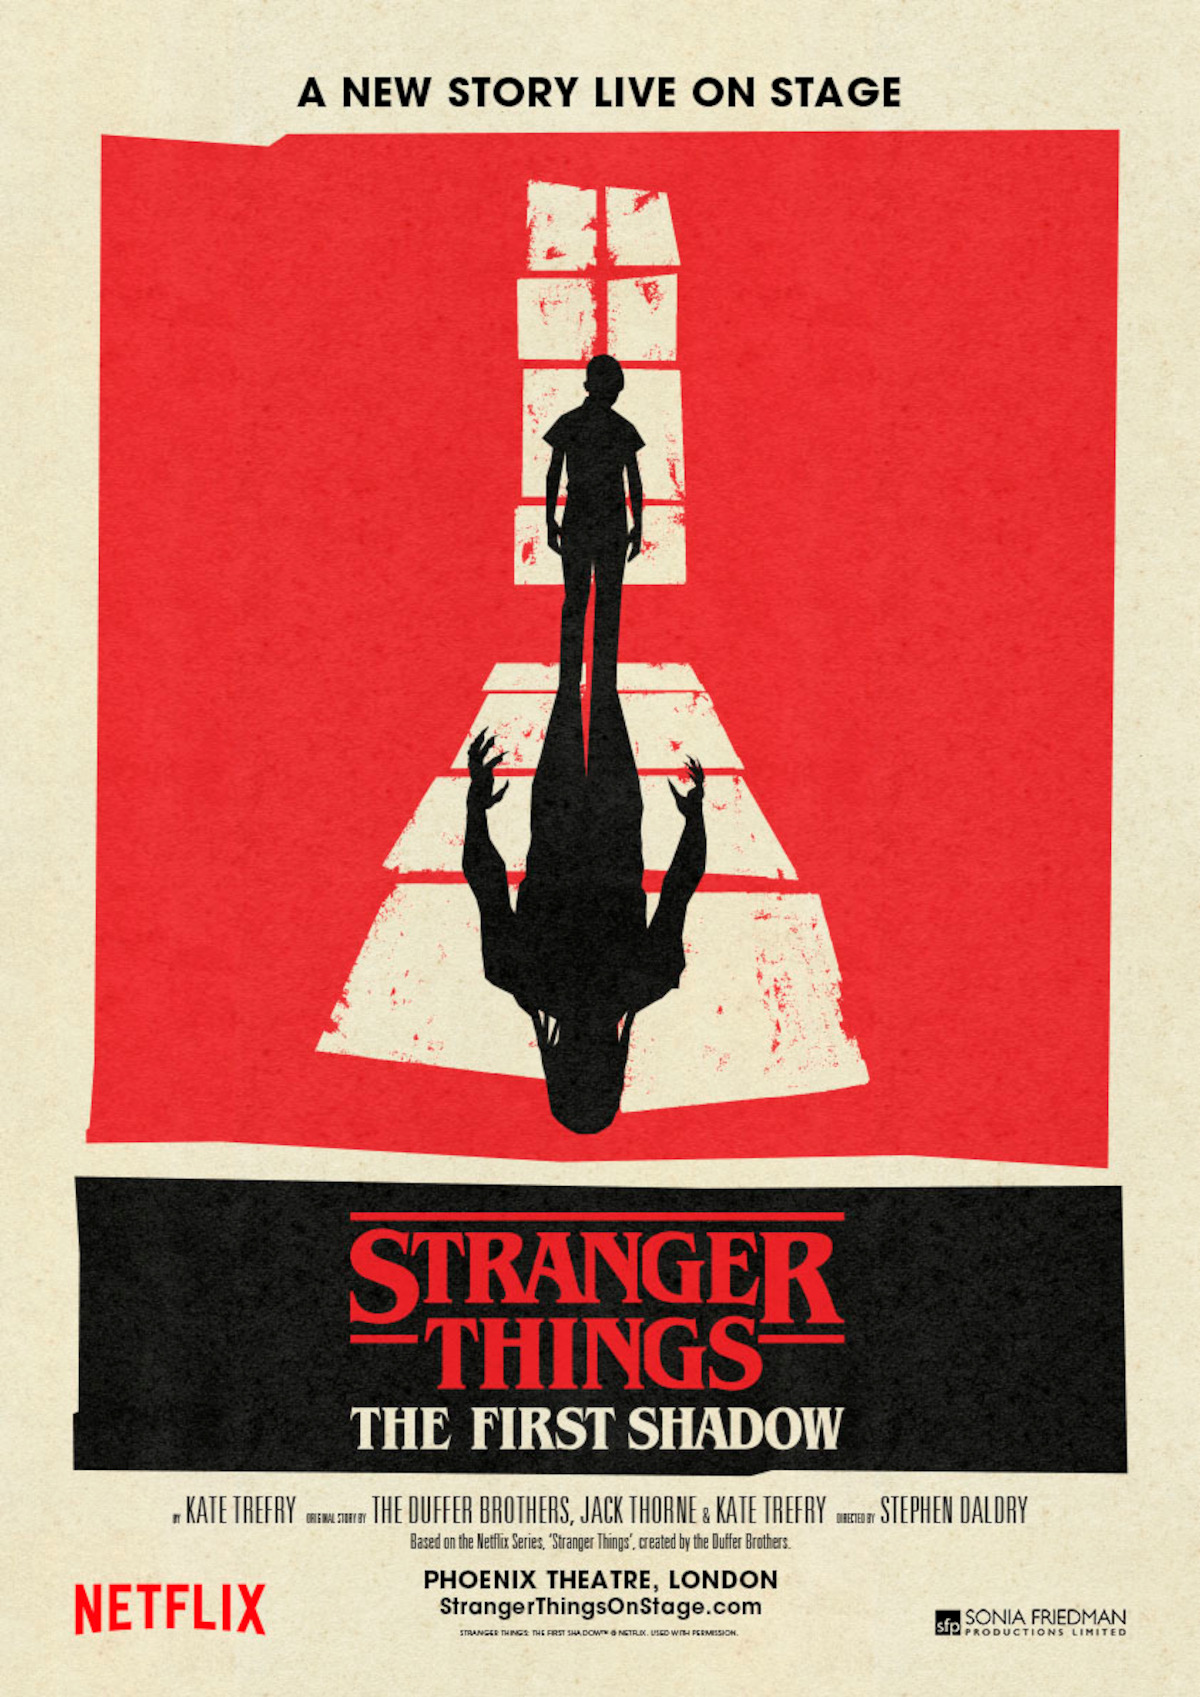 Stranger Things Day 2023 teve o lançamento de "Stranger Things: The First Shadow" com apresentações ao vivo.